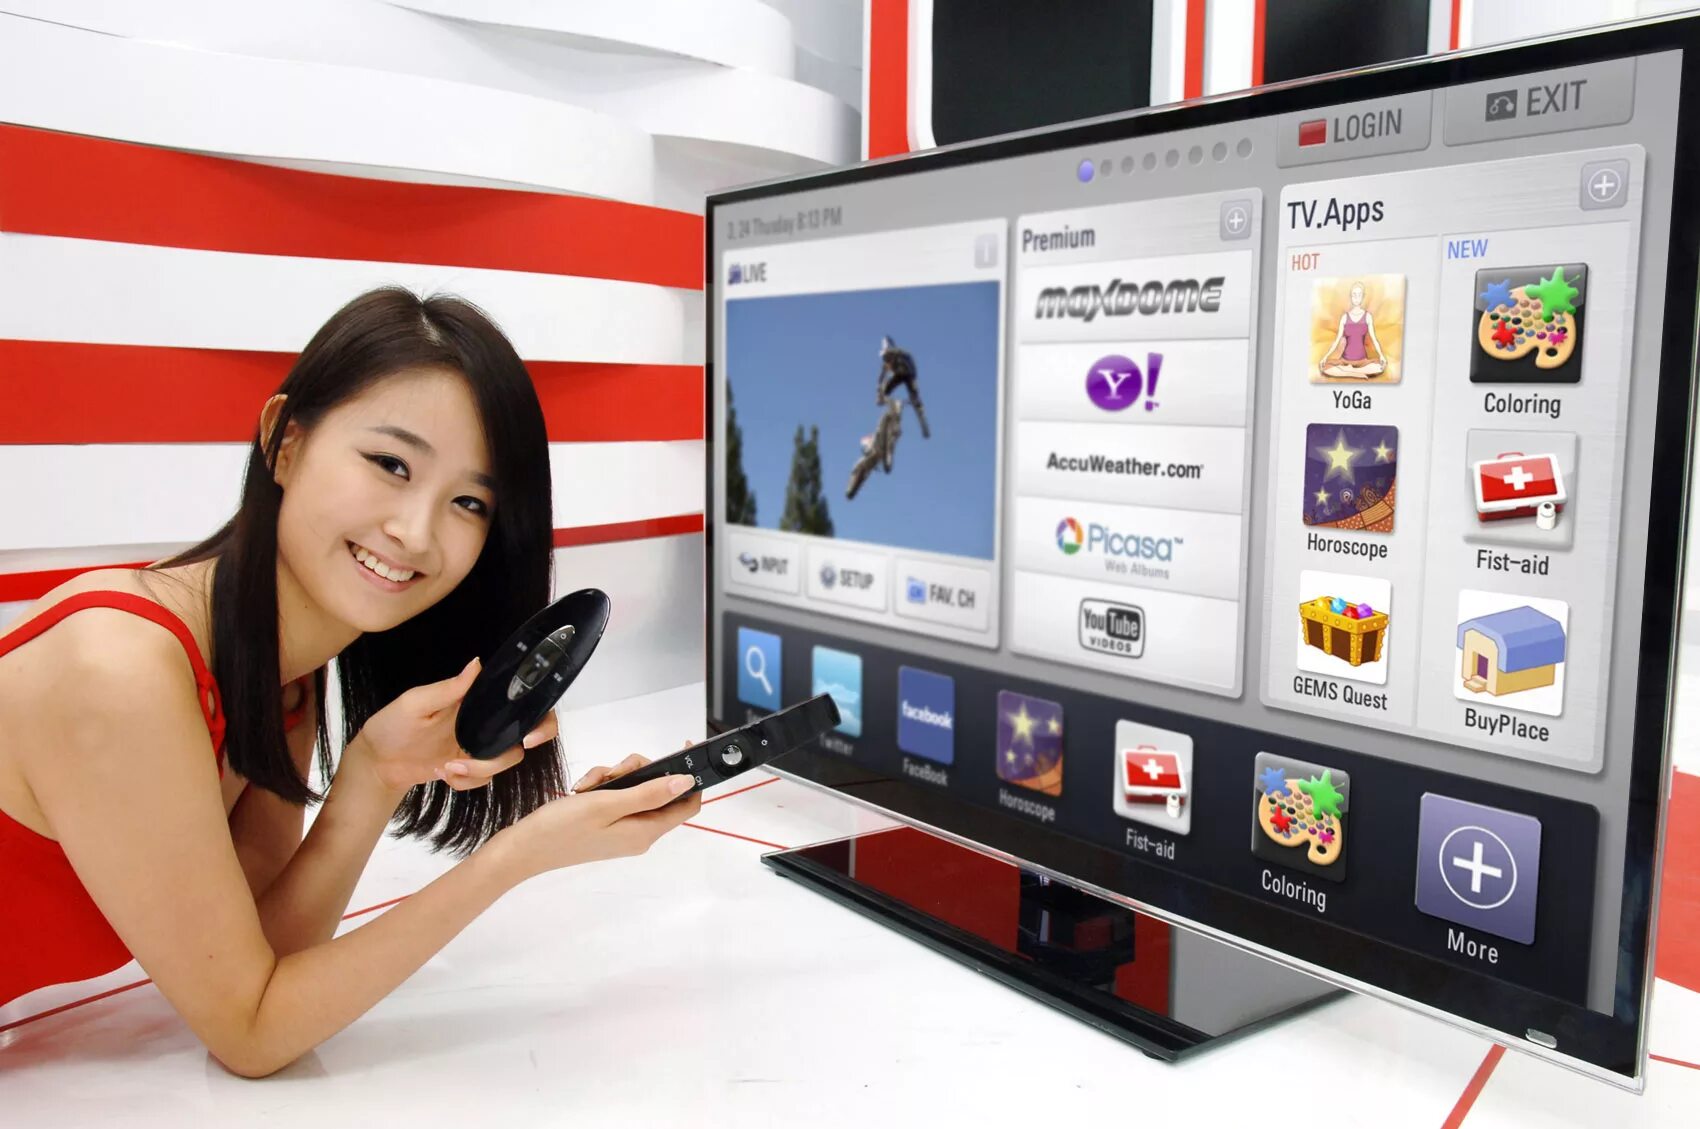 Реклама телевизоров видео. Телевизор LG Smart TV. ЛГ смарт ТВ 1. Телевизор с выходом в интернет. Современные телевизоры с интернетом.